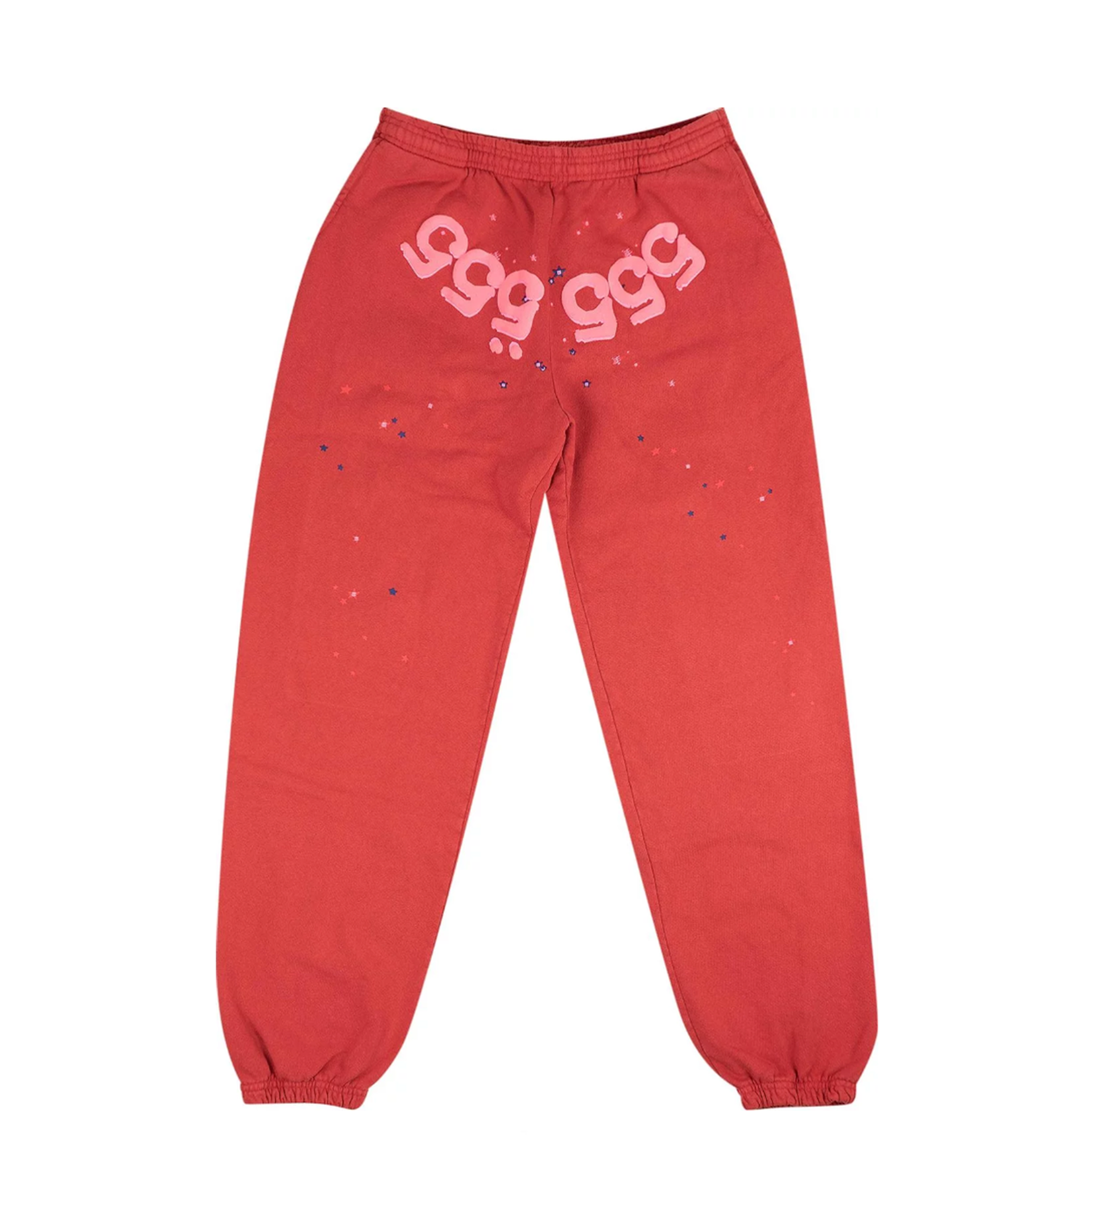 Sp5der 555 Angel Number Sweatpants Red | Restock AR